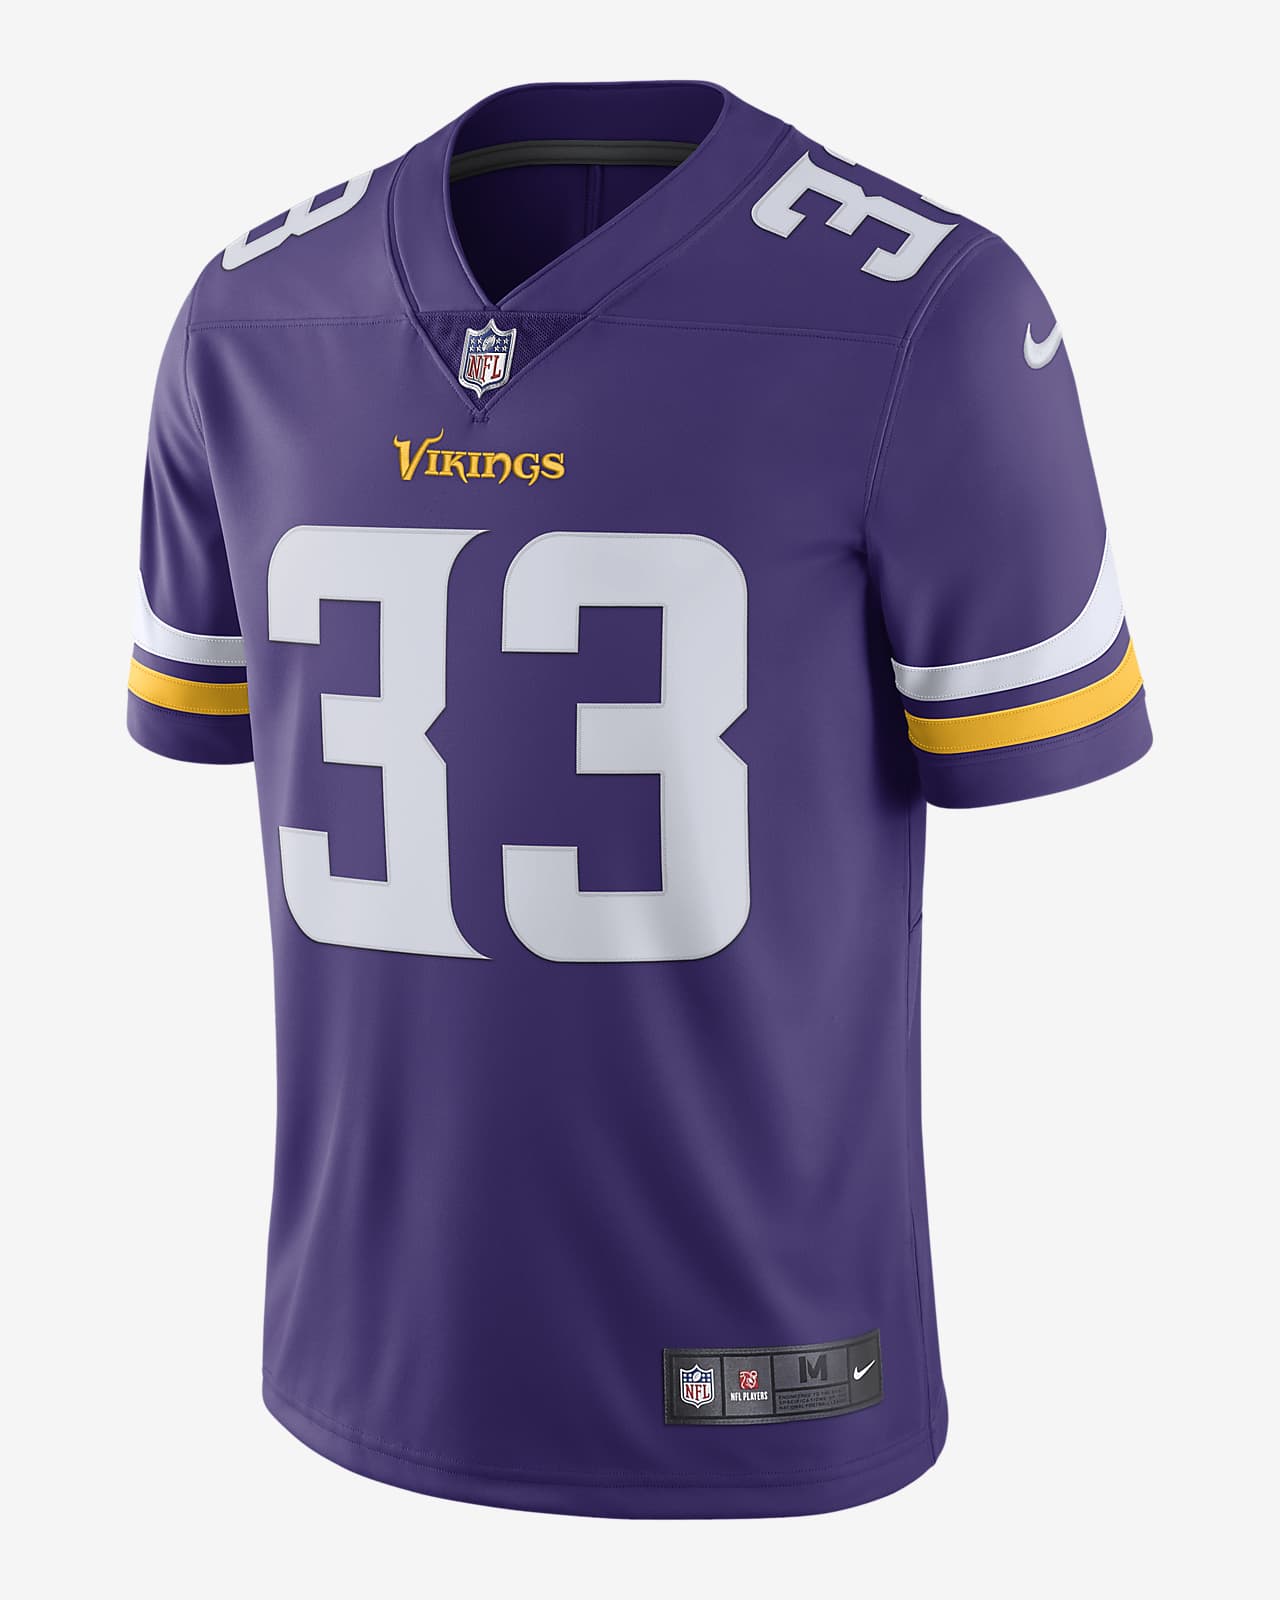 î€€NFLî€ Minnesota Vikings Vapor Untouchable (Dalvin Cook) Men\'s Limited ...